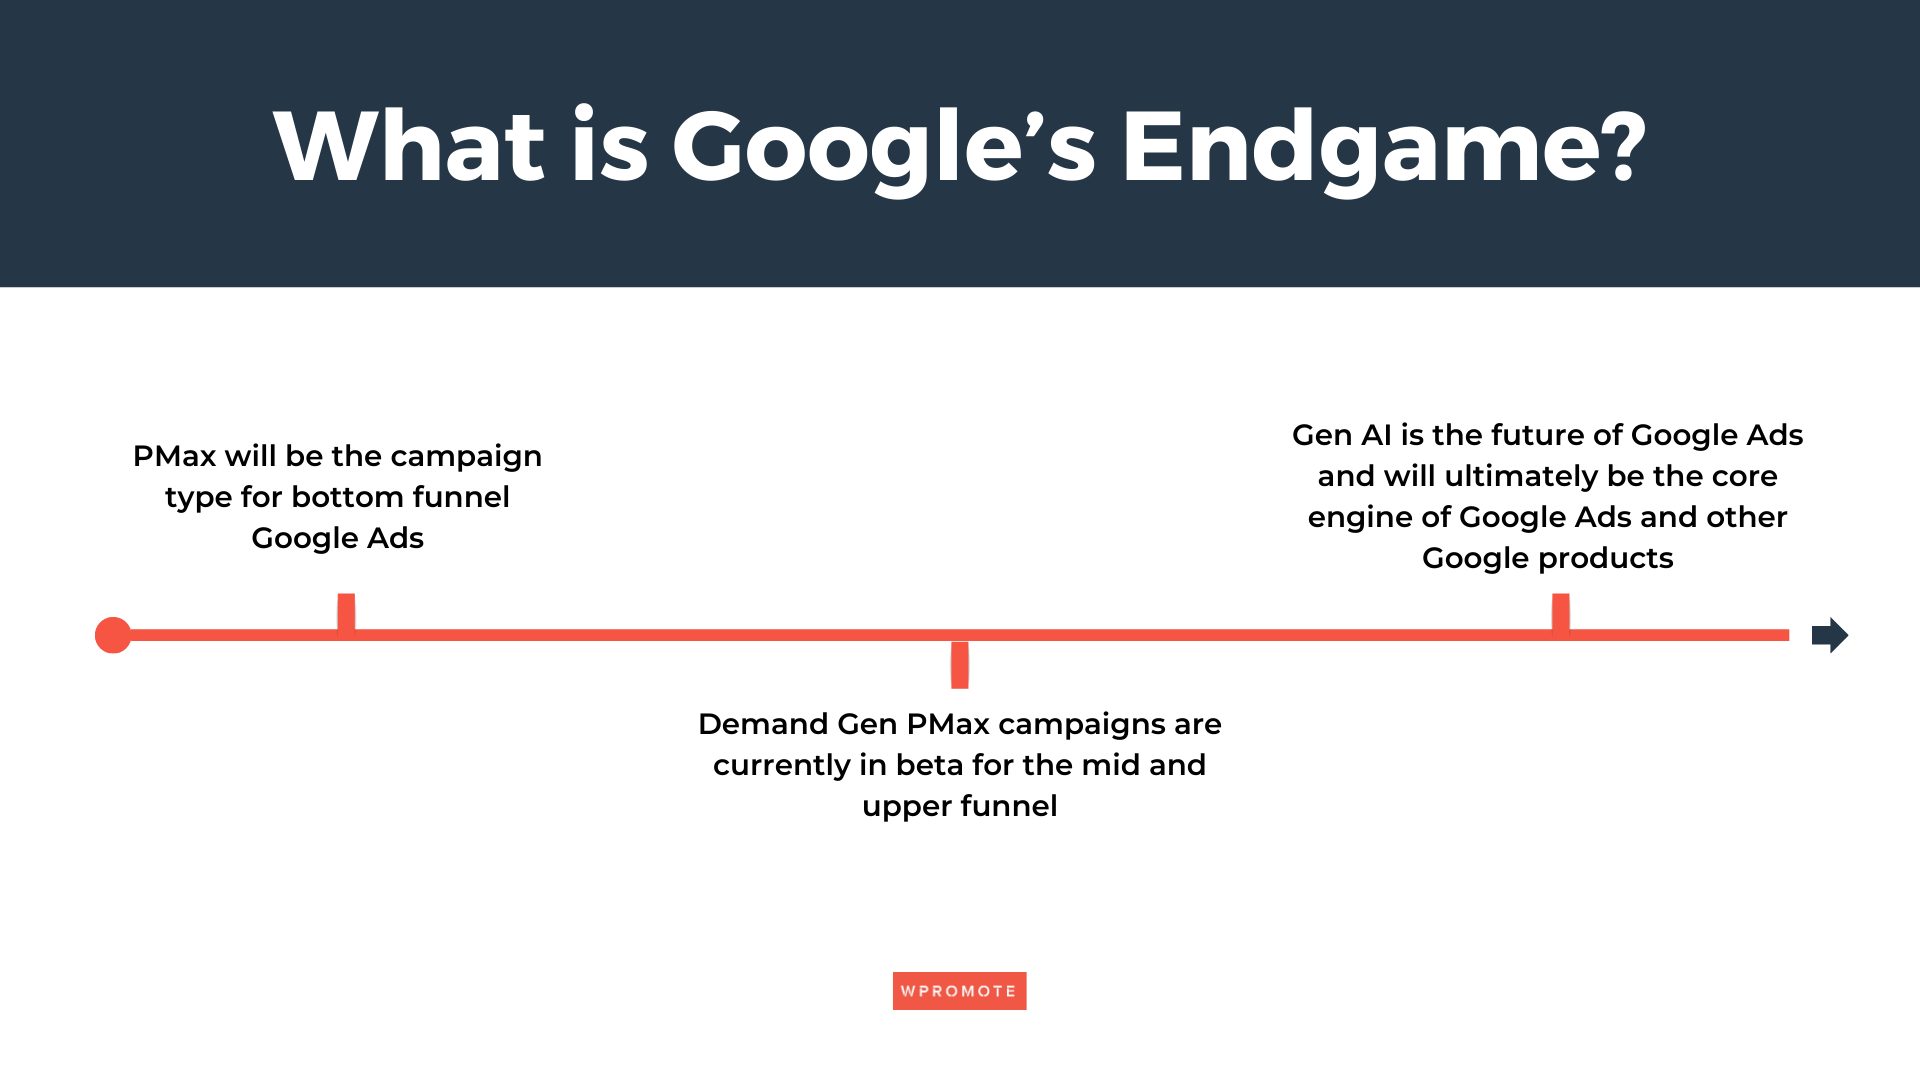 Google's Endgame for Performance Max